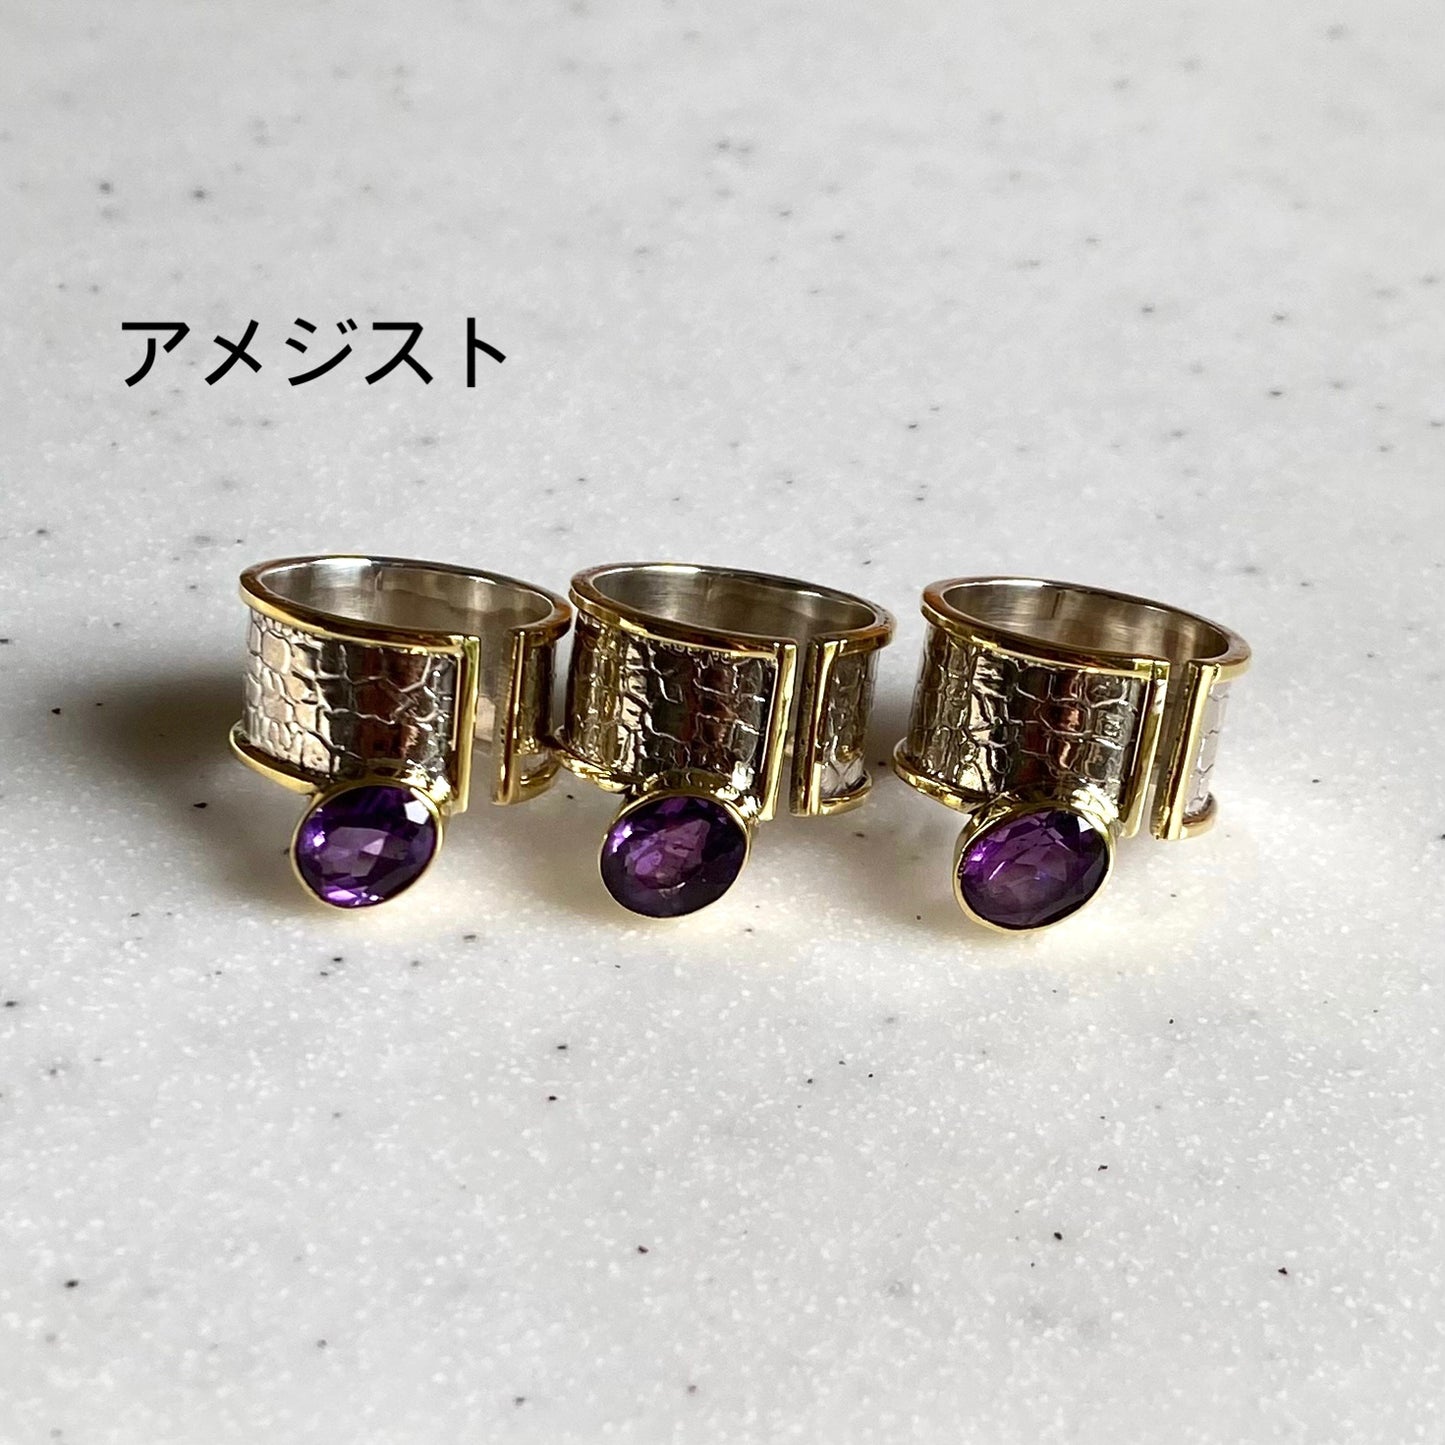 Silver925&Brass design ring